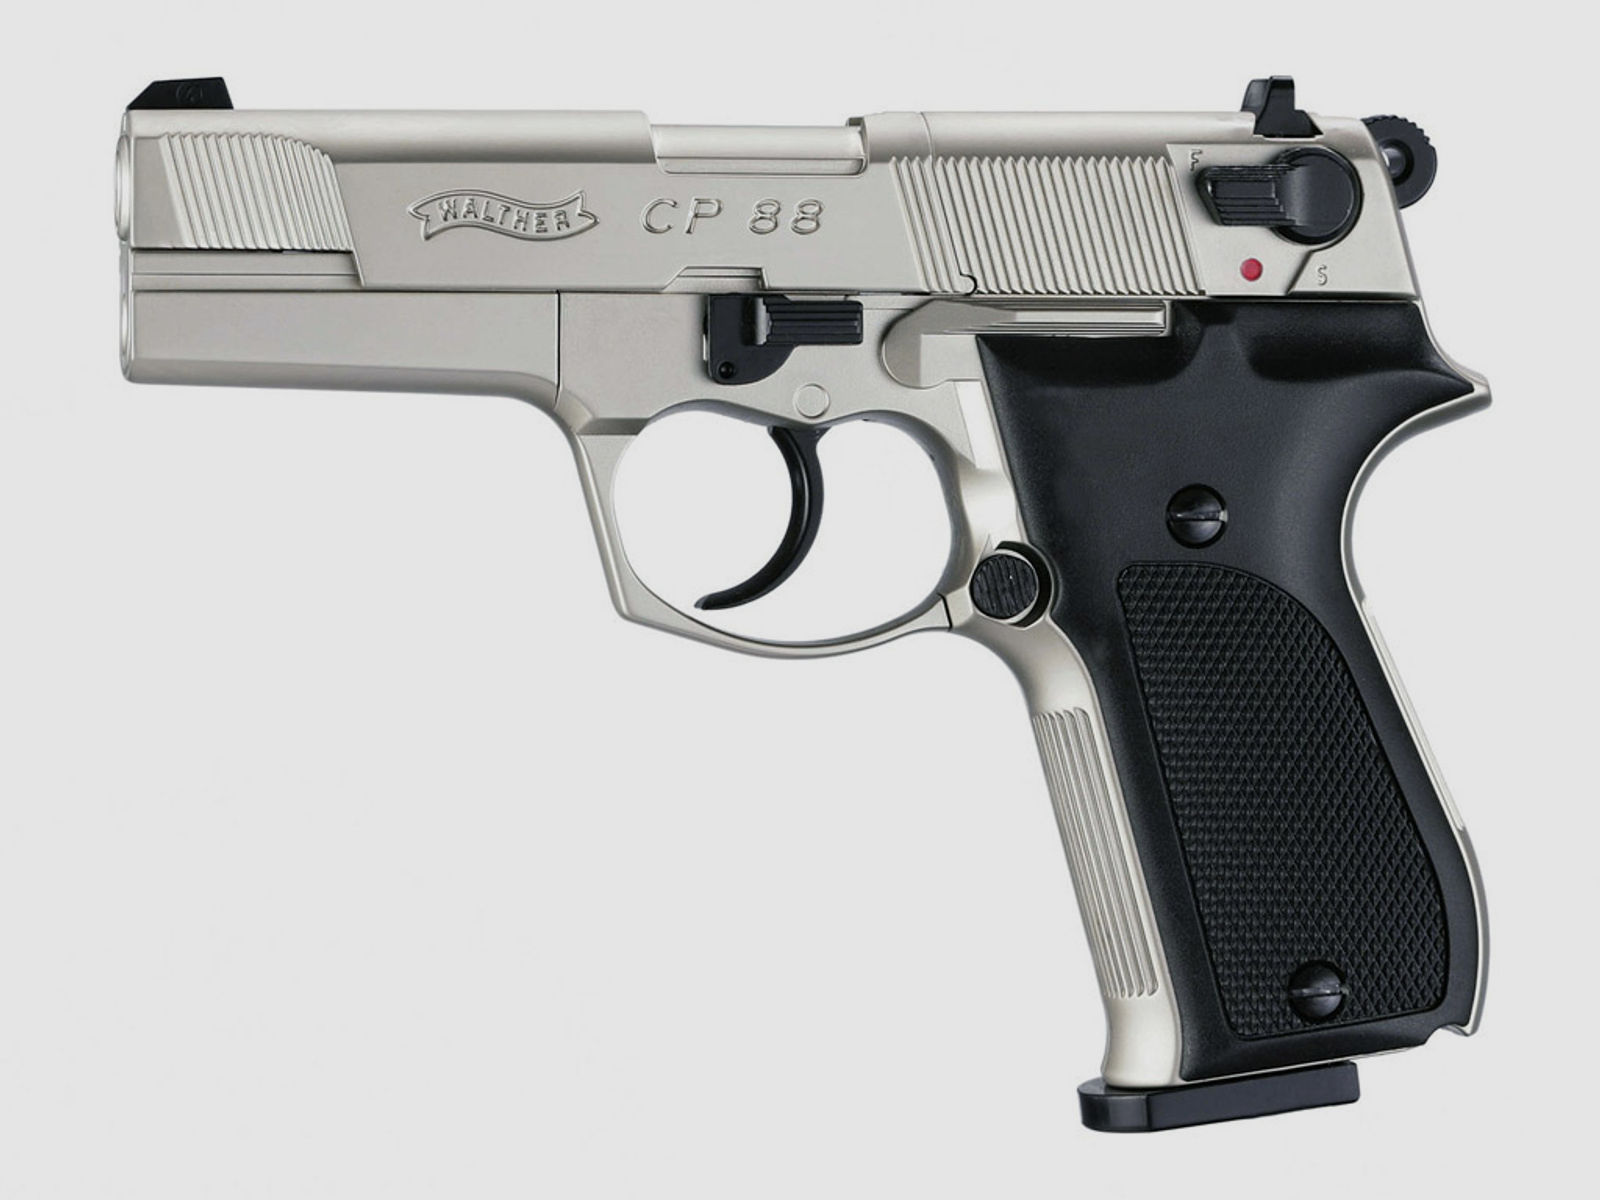 CO2 Pistole Walther CP88 nickel Kunststoffgriffschalen Kaliber 4,5 mm Diabolo (P18) + SchalldĂ¤mpfer schwarz Adapter